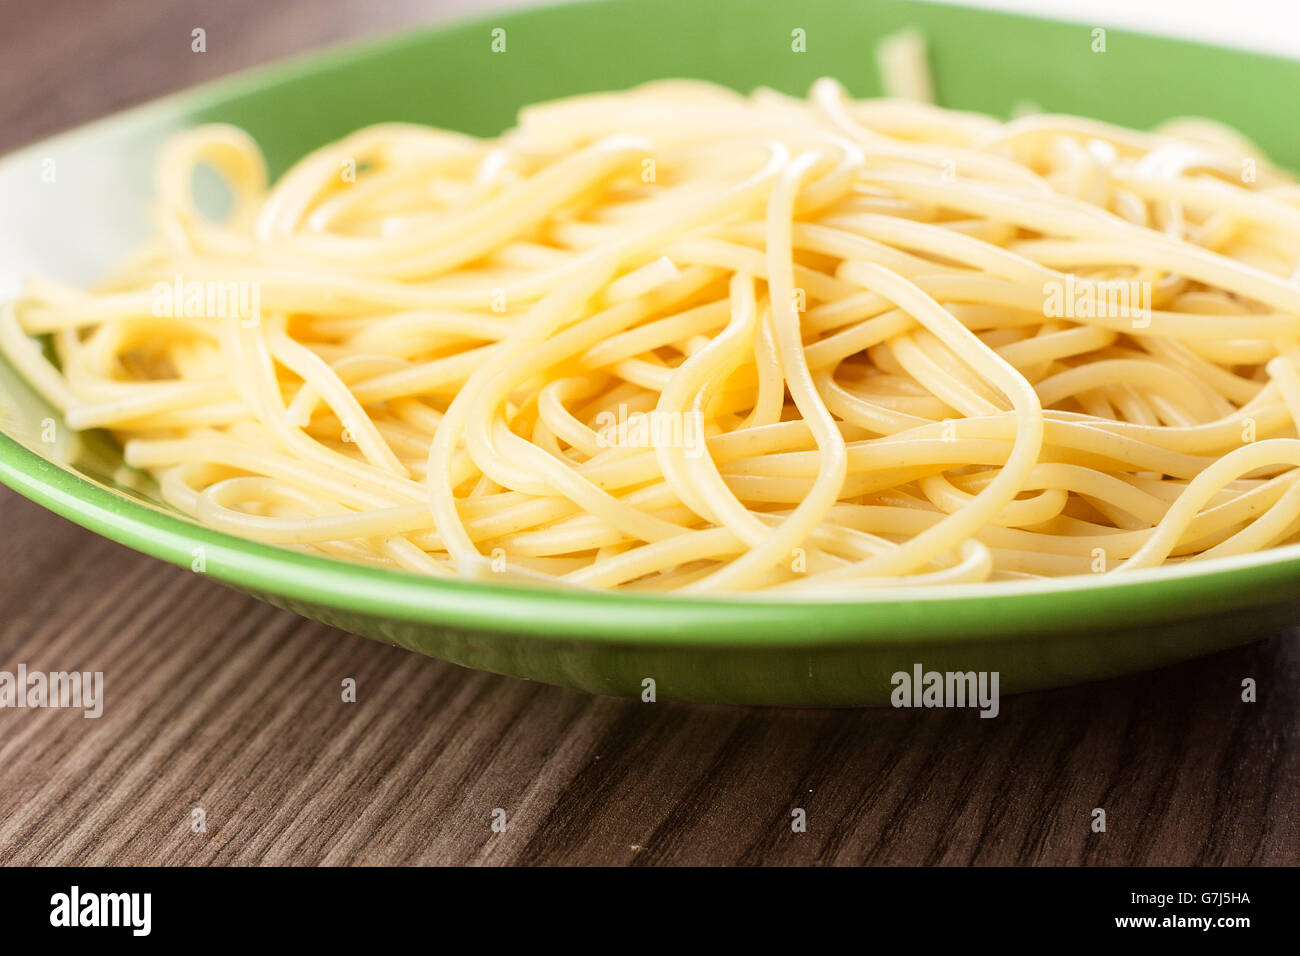 Spaghetti cuit simplement servi dans une assiette verte sur une table en bois Banque D'Images